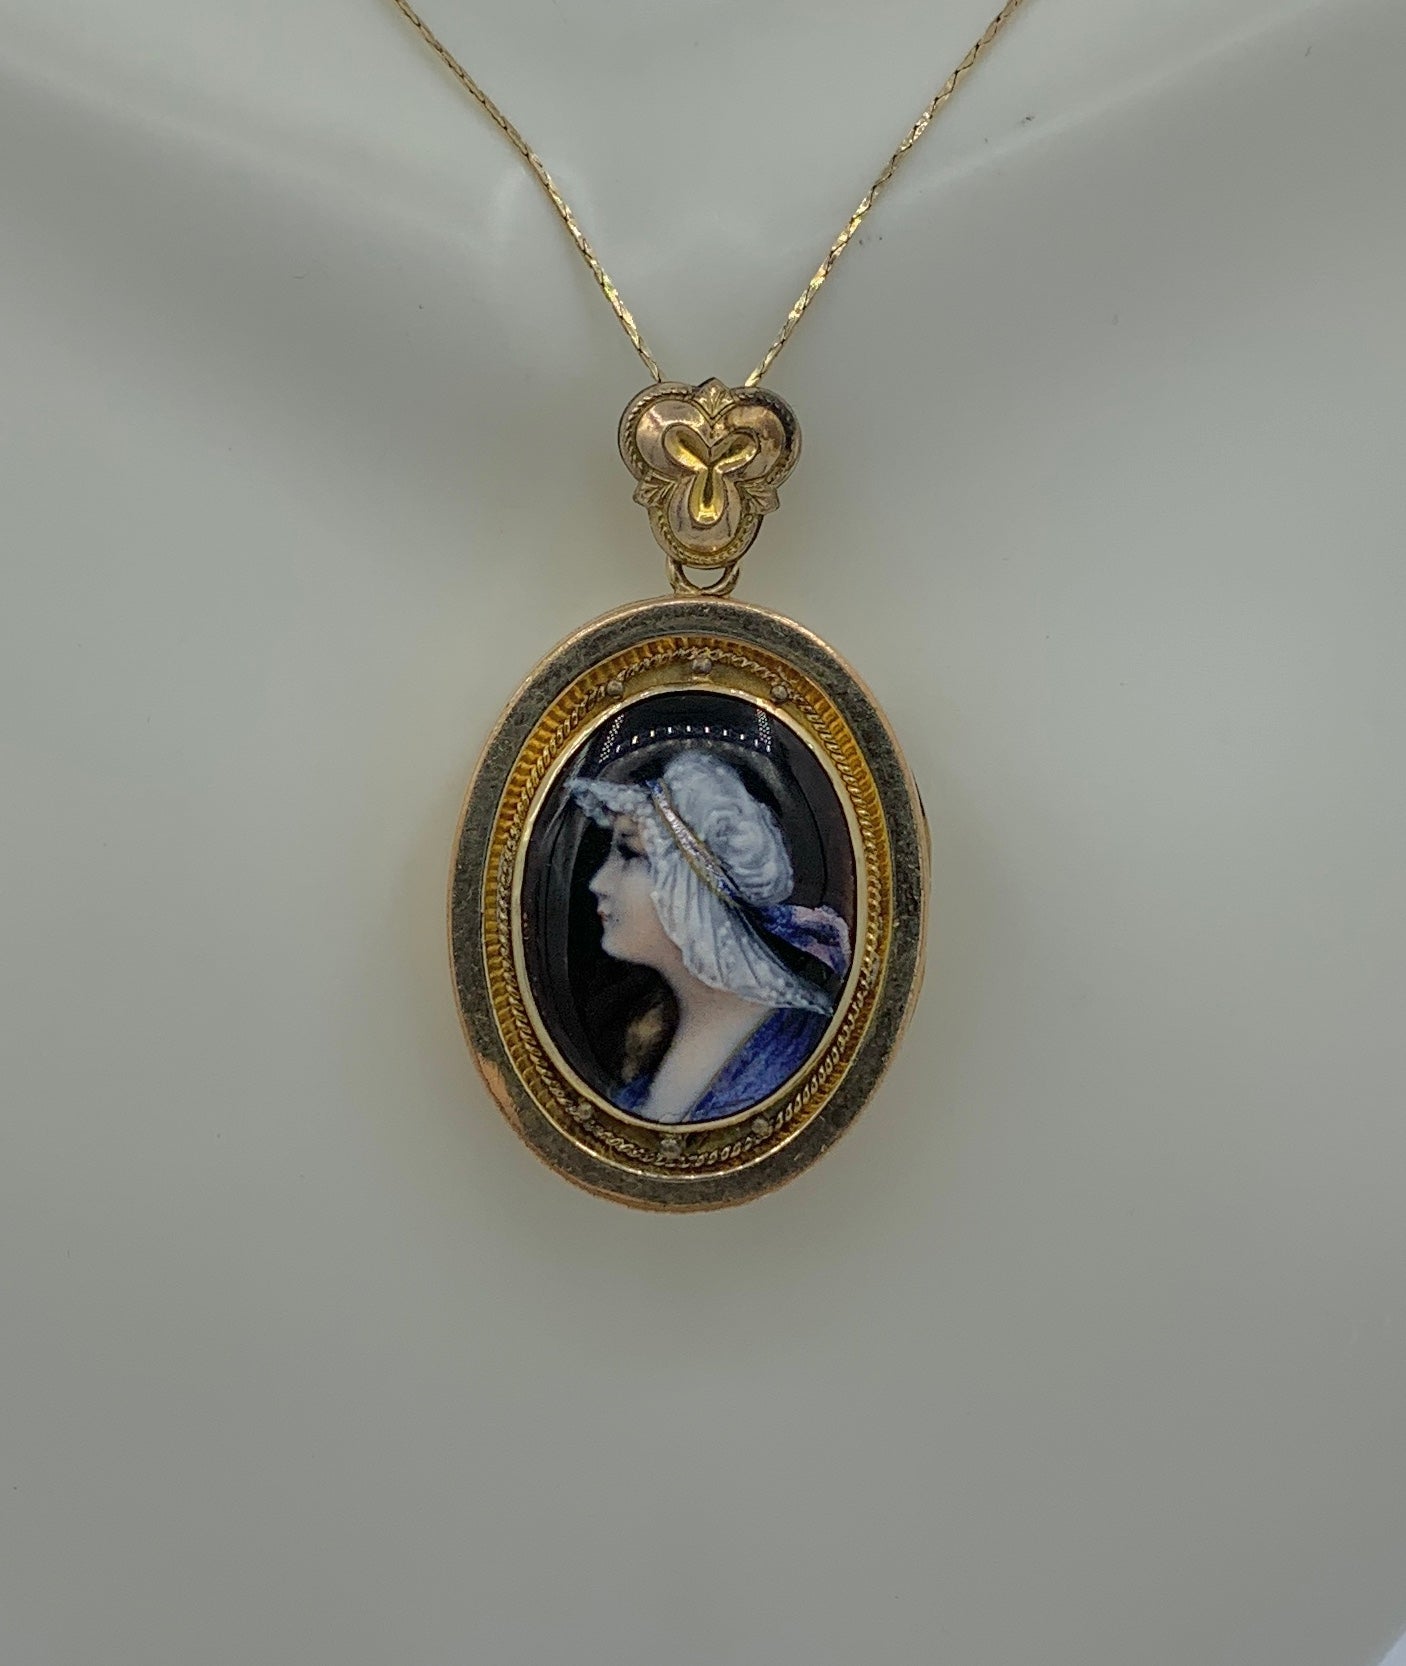 Dies ist eine seltene Art Deco - Art Nouveau Limoges Emaille Medaillon Anhänger.  Das prächtige Porträt einer Frau ist mit lebendigen, schillernden Farben handgemalt.   Dieses Porträt einer Frau hat ein wunderschönes, heiteres Gesicht mit einem